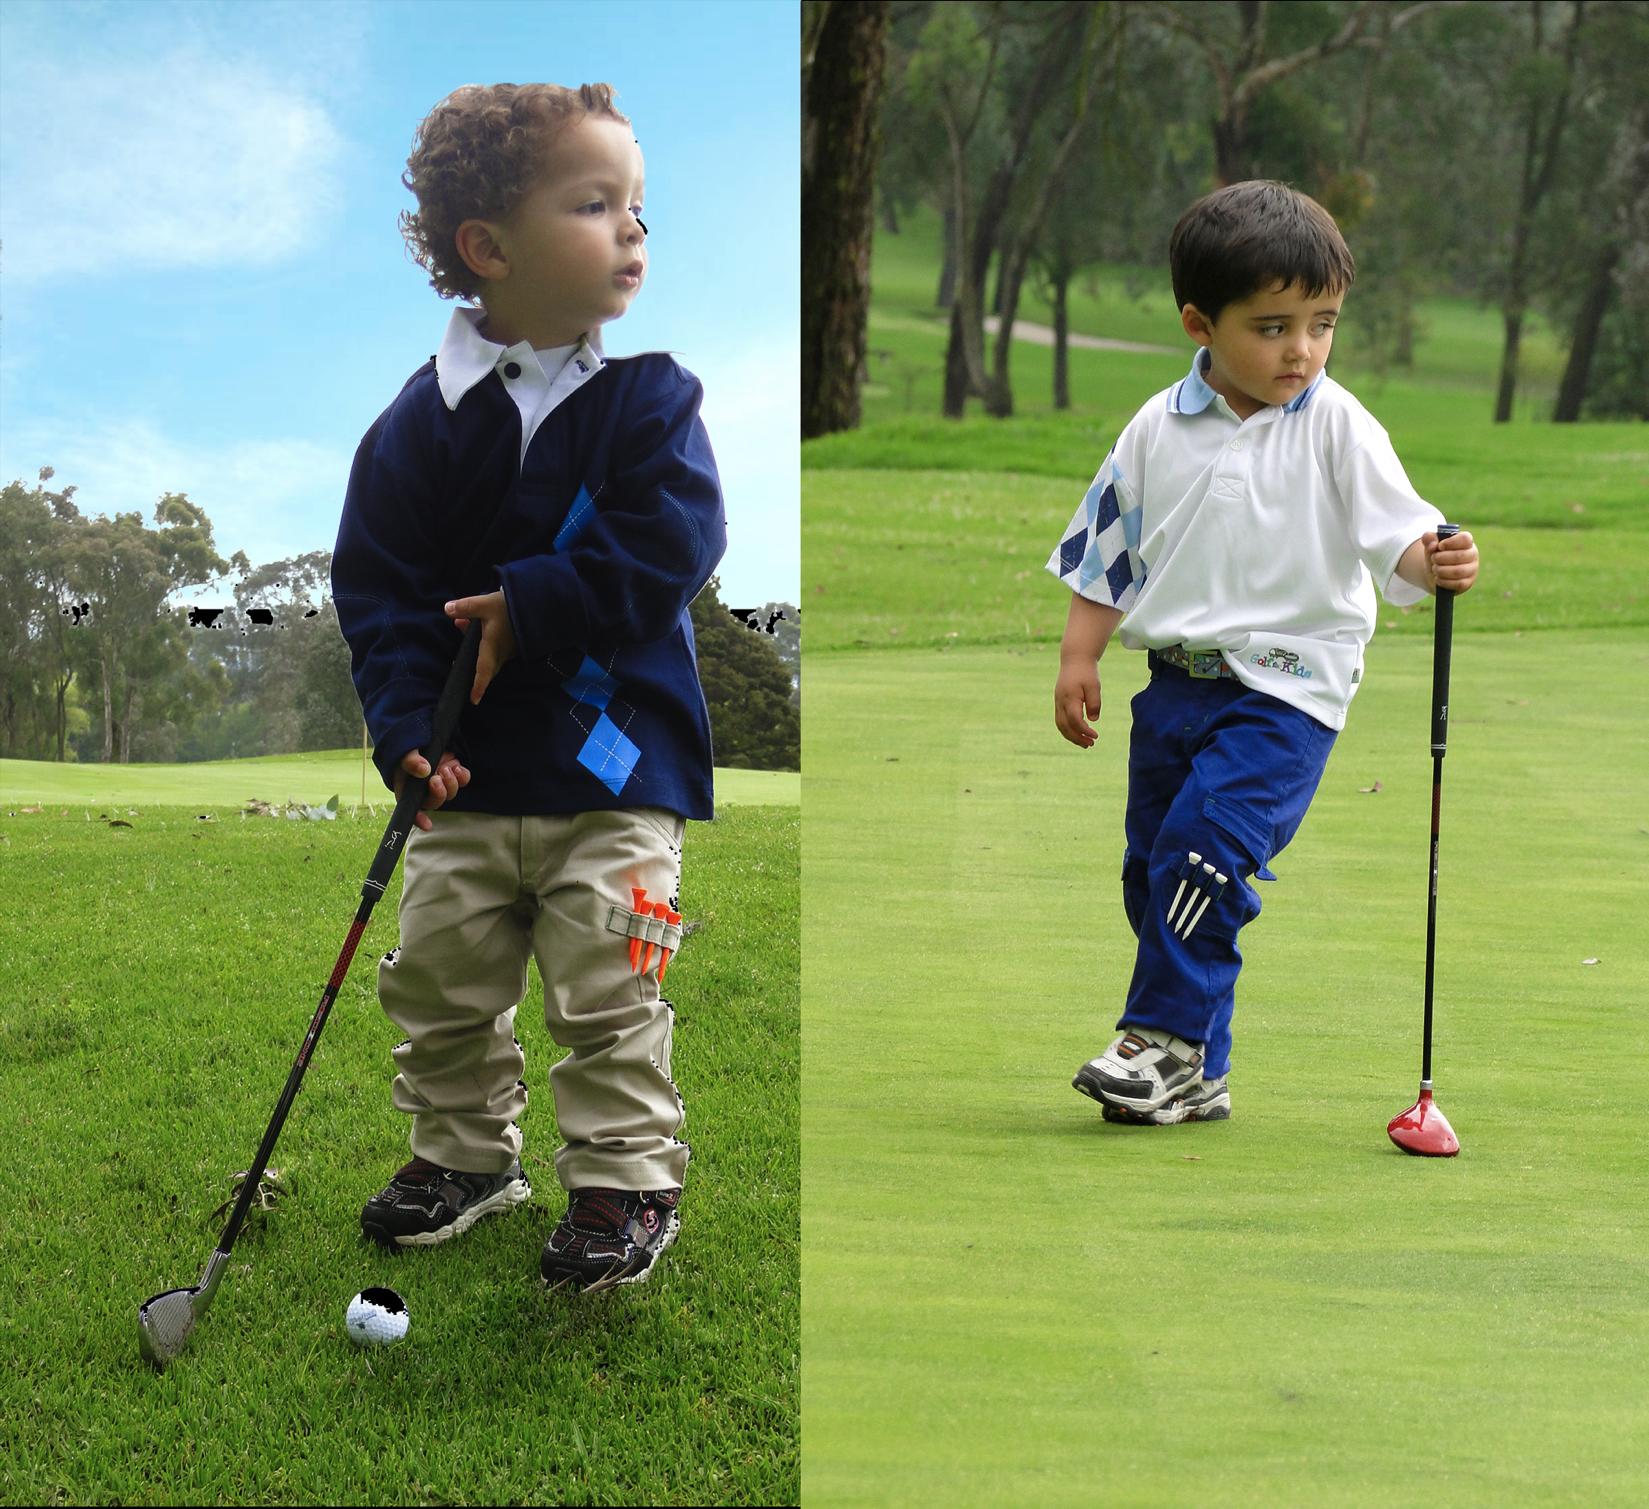 Los productos de Golf for Kids están elaborados con una alta tecnología en confección con costuras, hilos y fibras que dan perdurabilidad, combinadas con insumos de alta calidad, materiales